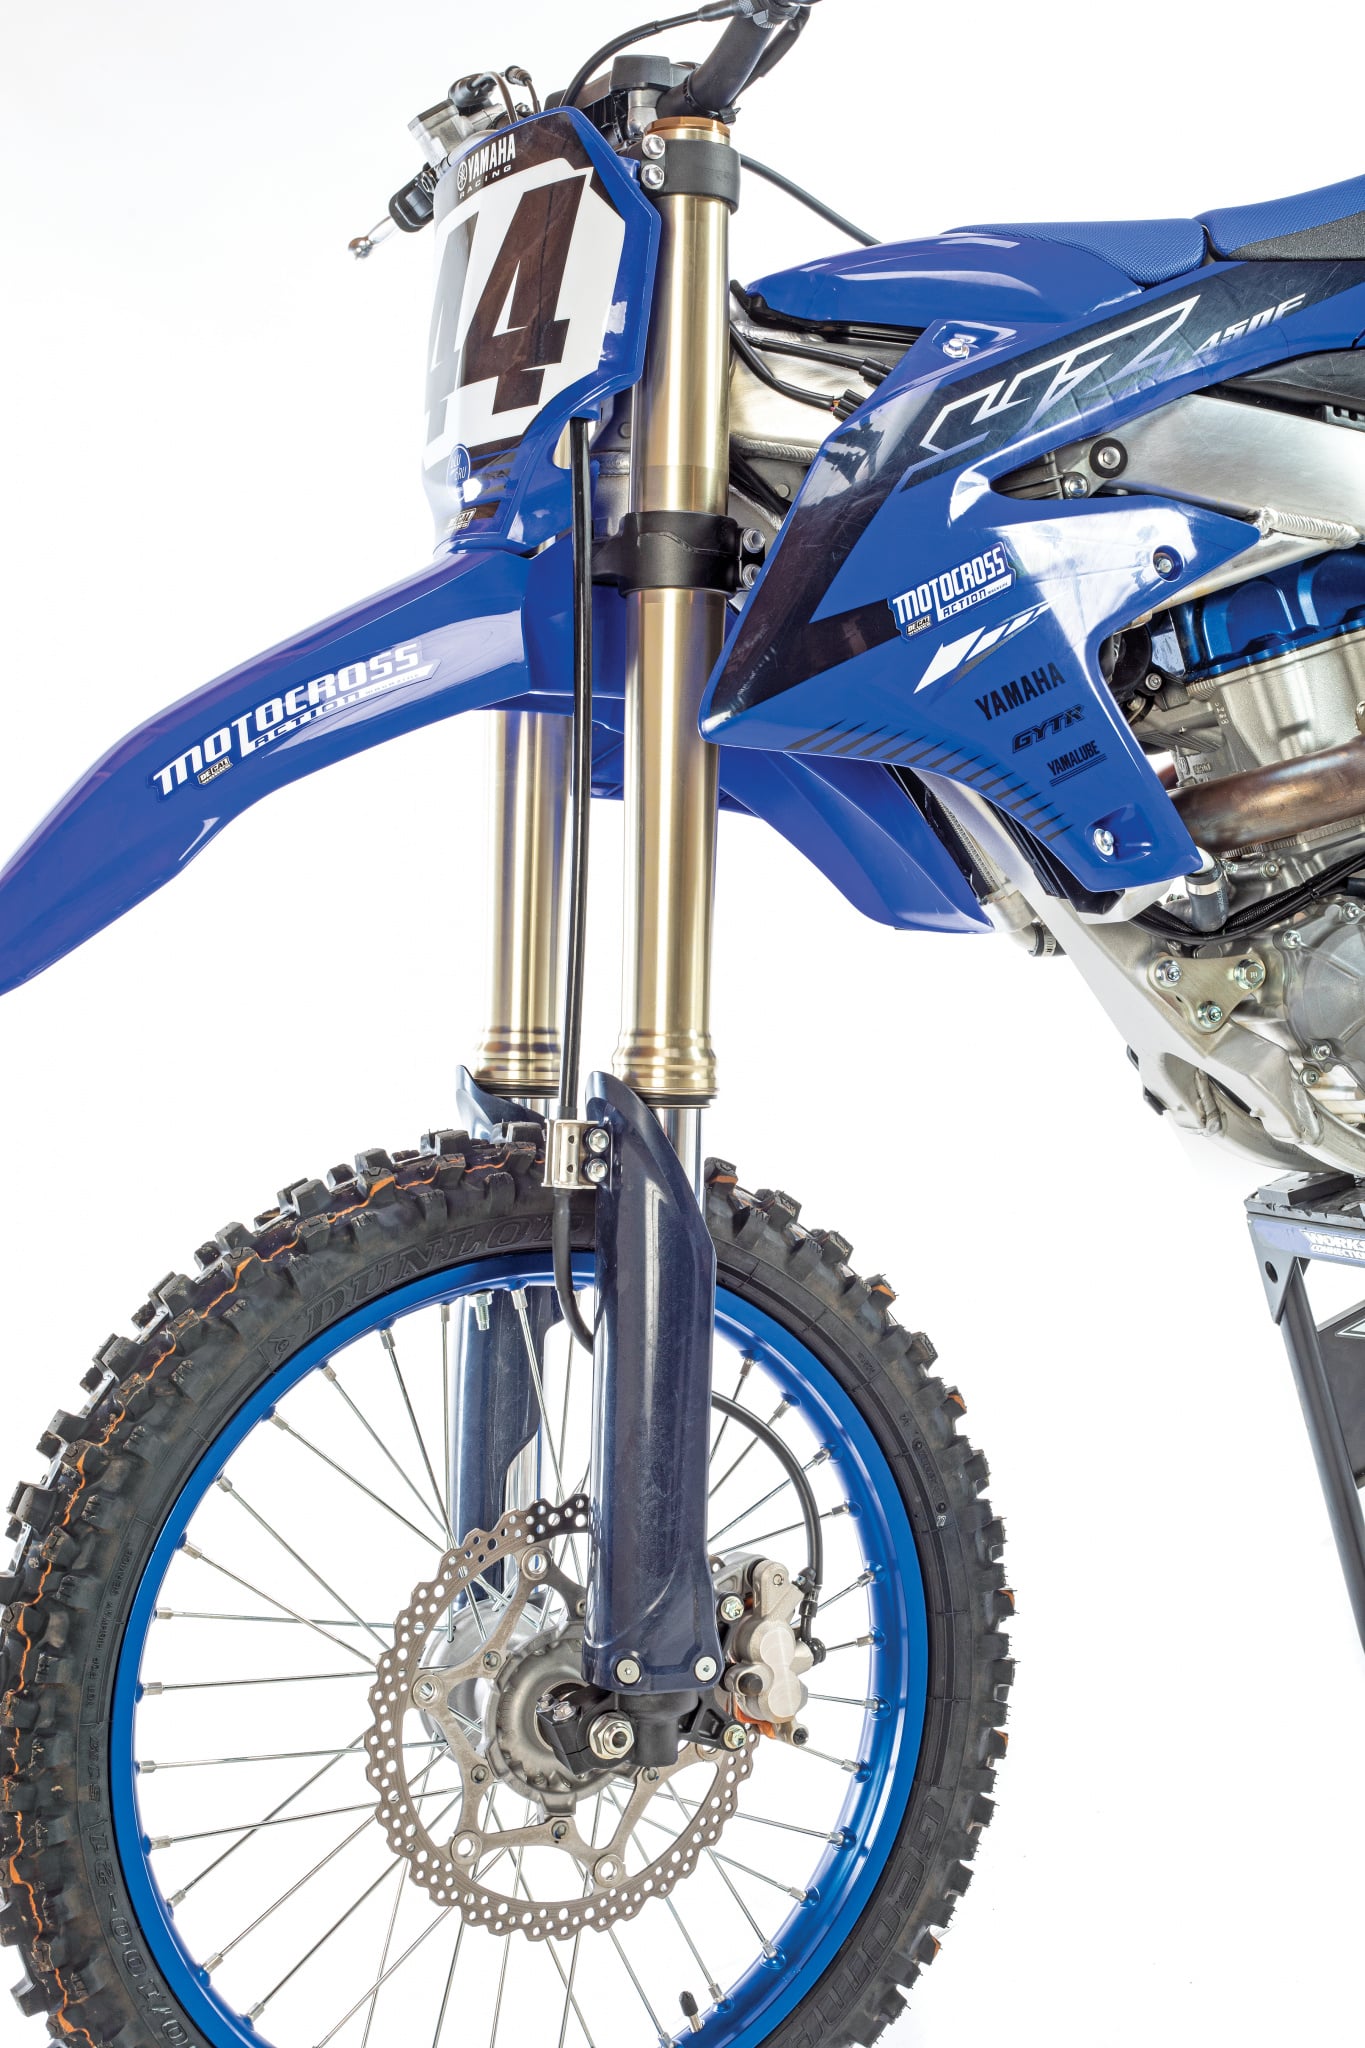 MX1  Yamaha apresenta nova YZ450F 2023 e outros modelos de motocross e  enduro